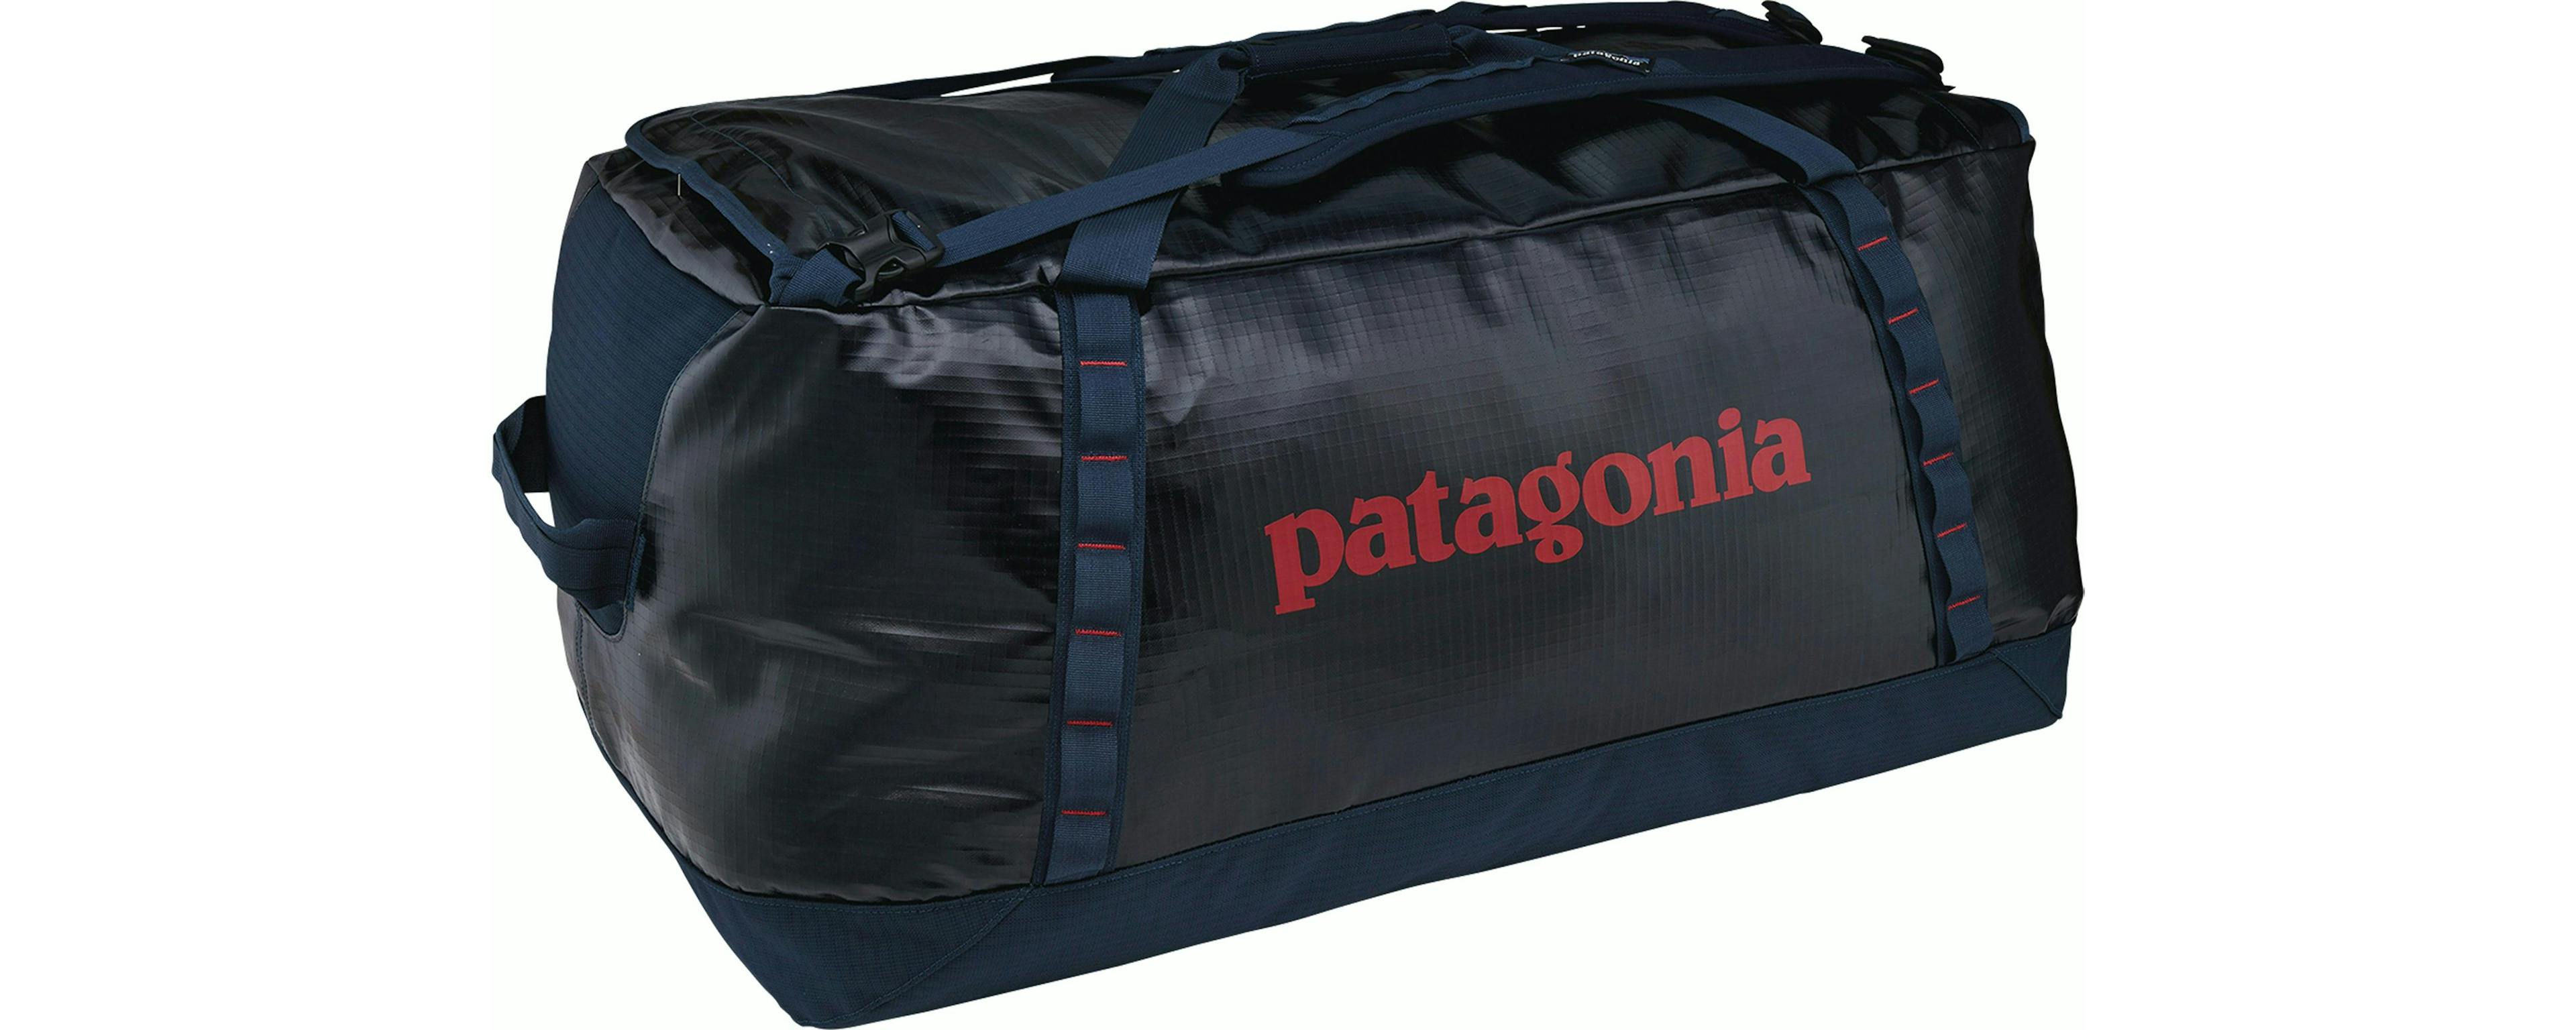 Black duffel bag from Patagonia